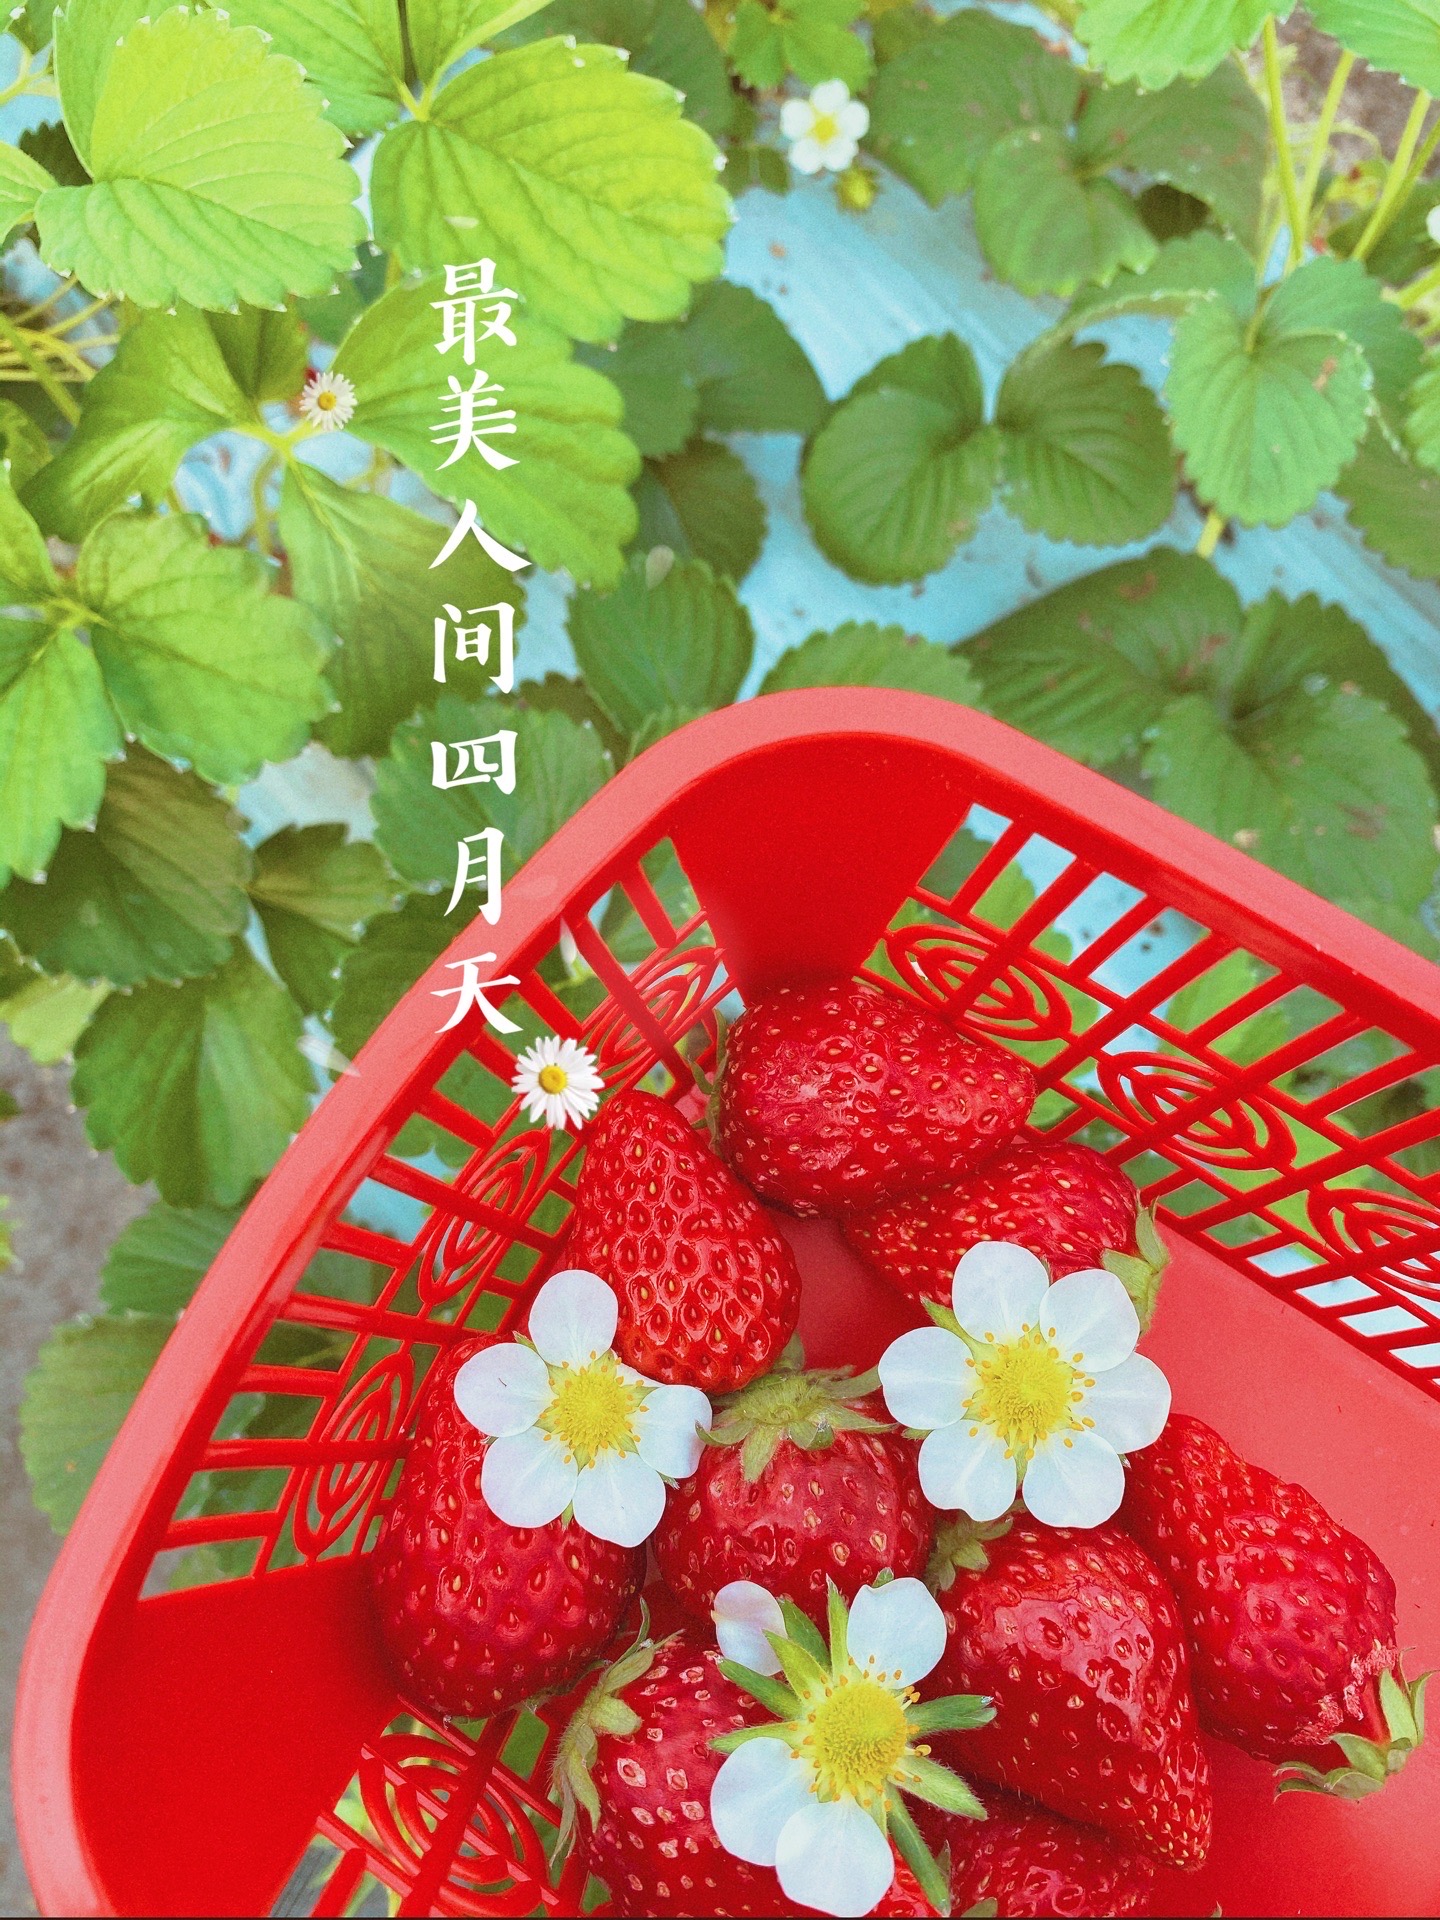 嘉兴玩乐｜春日看花摘草莓周边好去处🏕 经过了一个漫长的假期，到处都已经春暖花开 耐不住想出去玩耍的心